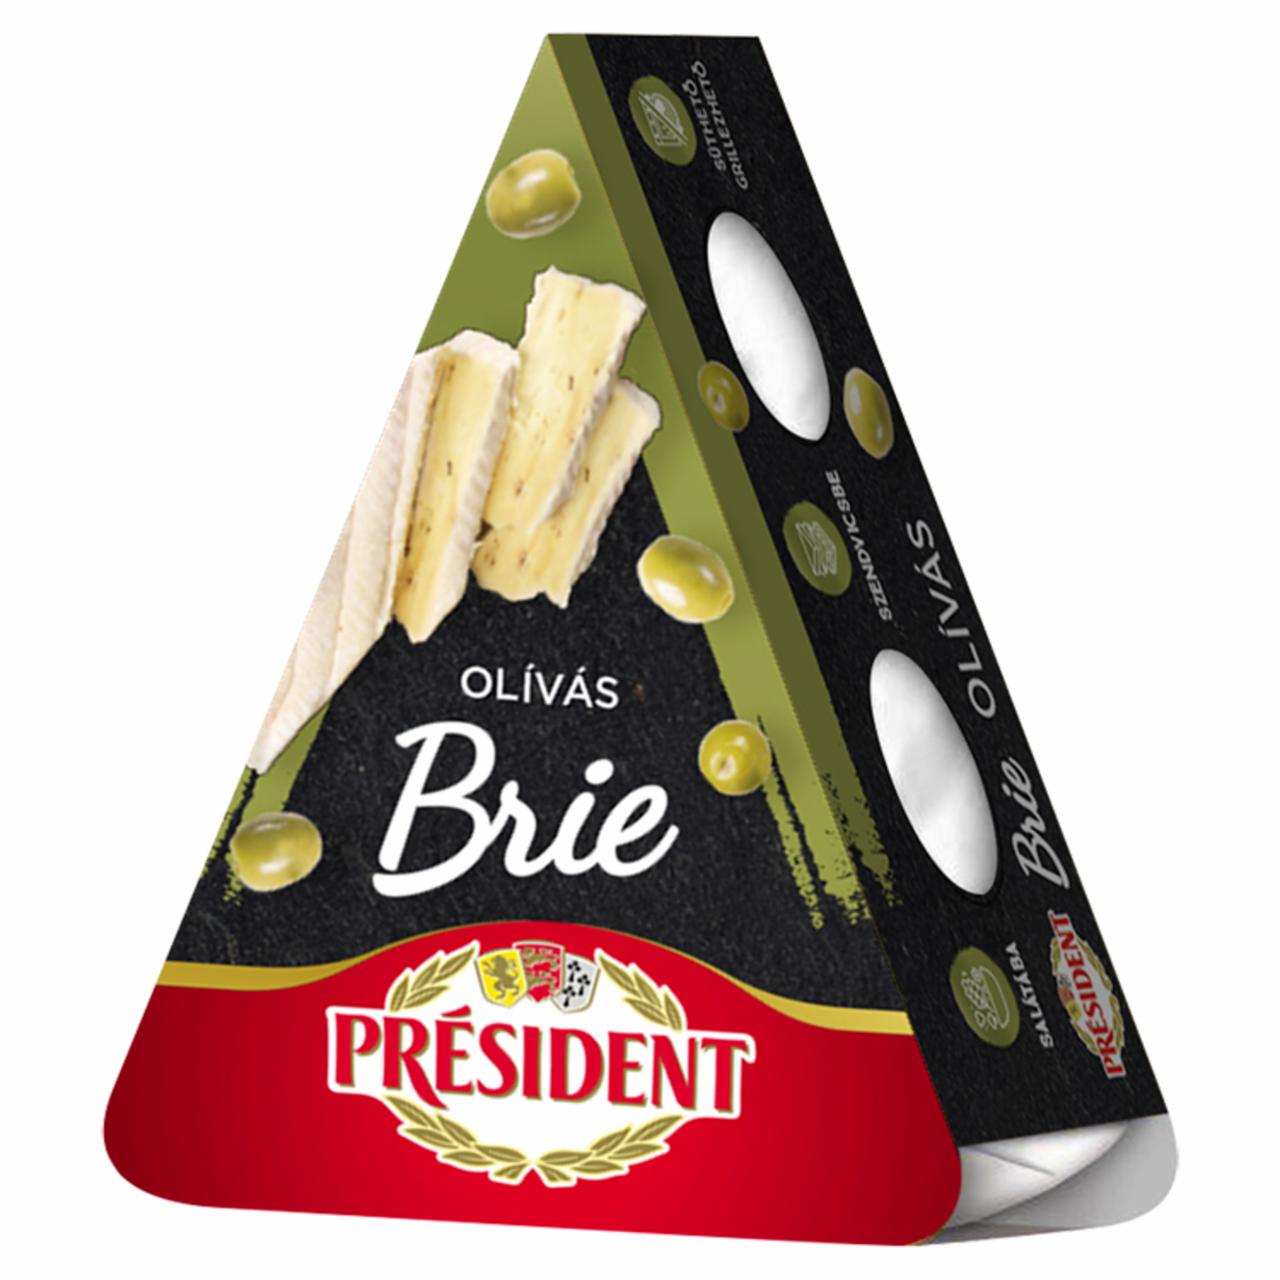 Képek - Président Brie olívás, zsírdús sajt 125 g